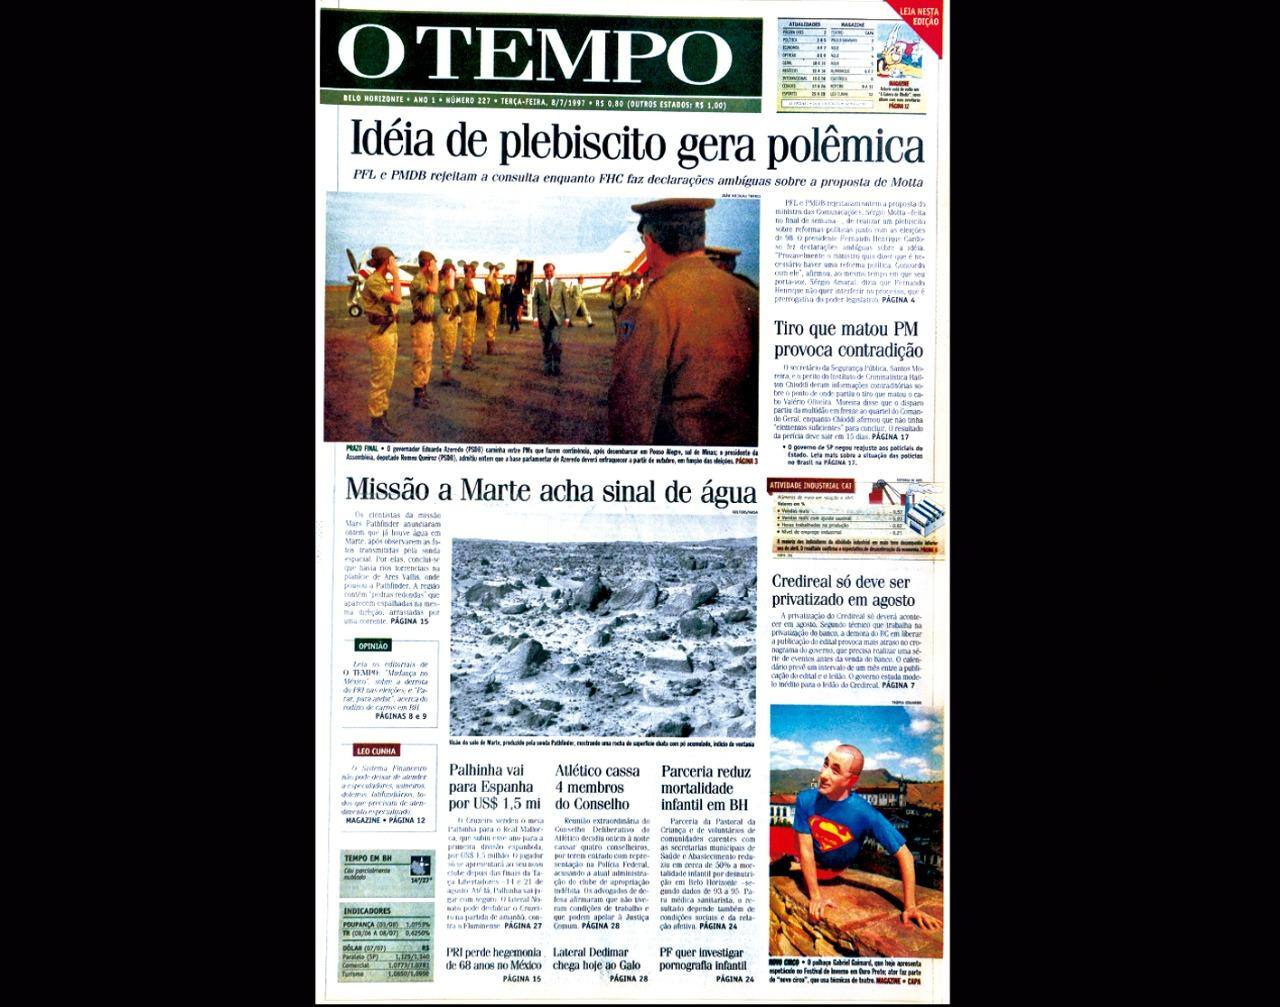 Capa do jornal O TEMPO no dia 8.7.1997; resgate do acervo marca as comemorações dos 25 anos da publicação